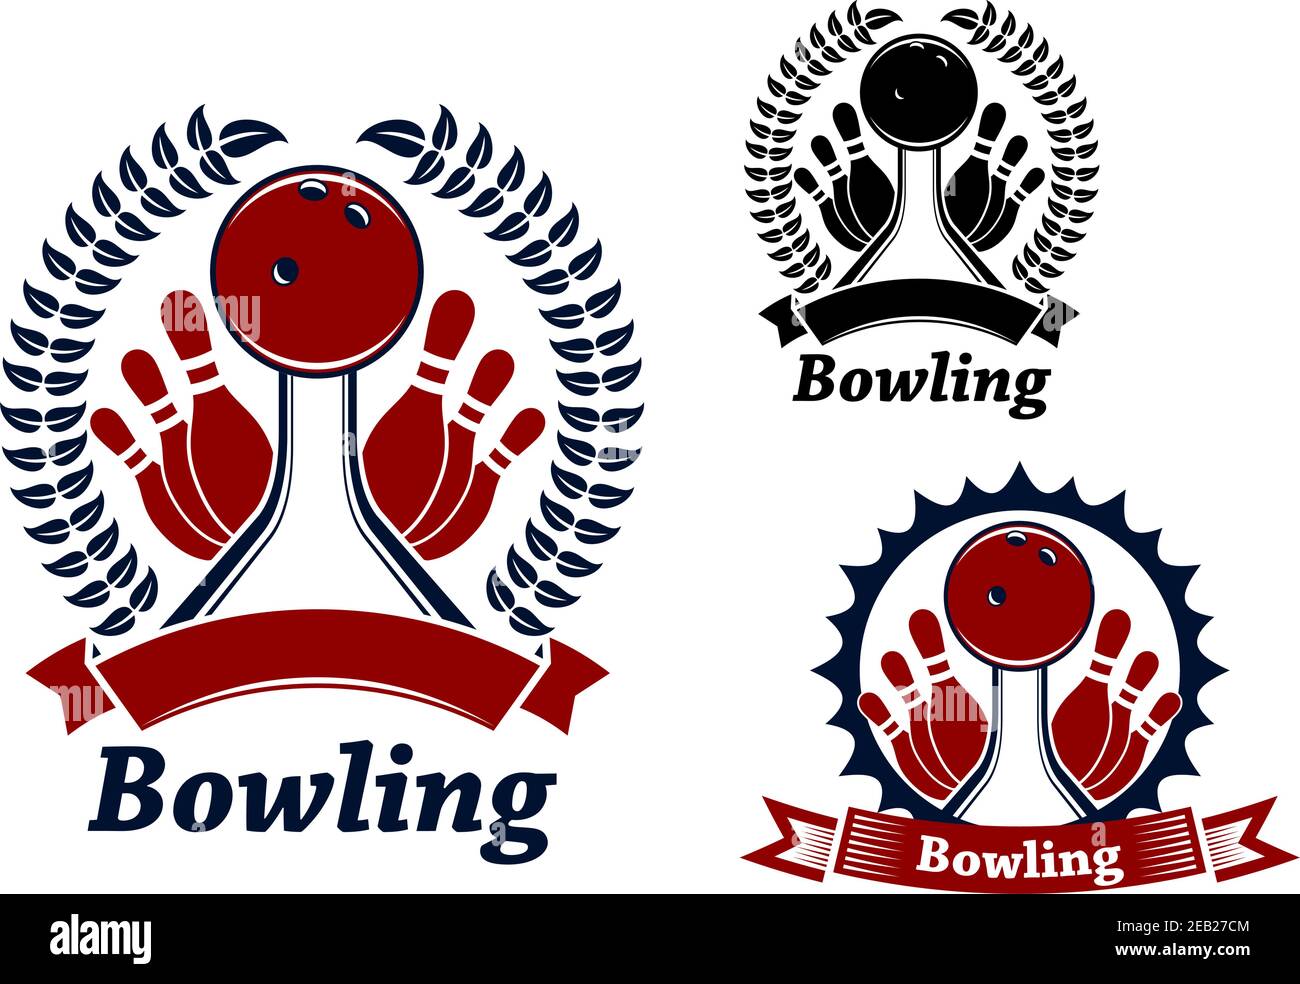 Bowlingkugeln, die auf Bahnen krachen, verzierte Bandbanner, Lorbeerkranz oder Rahmen mit Sonnenstrahlen, für Bowlingclub-Emblem Stock Vektor